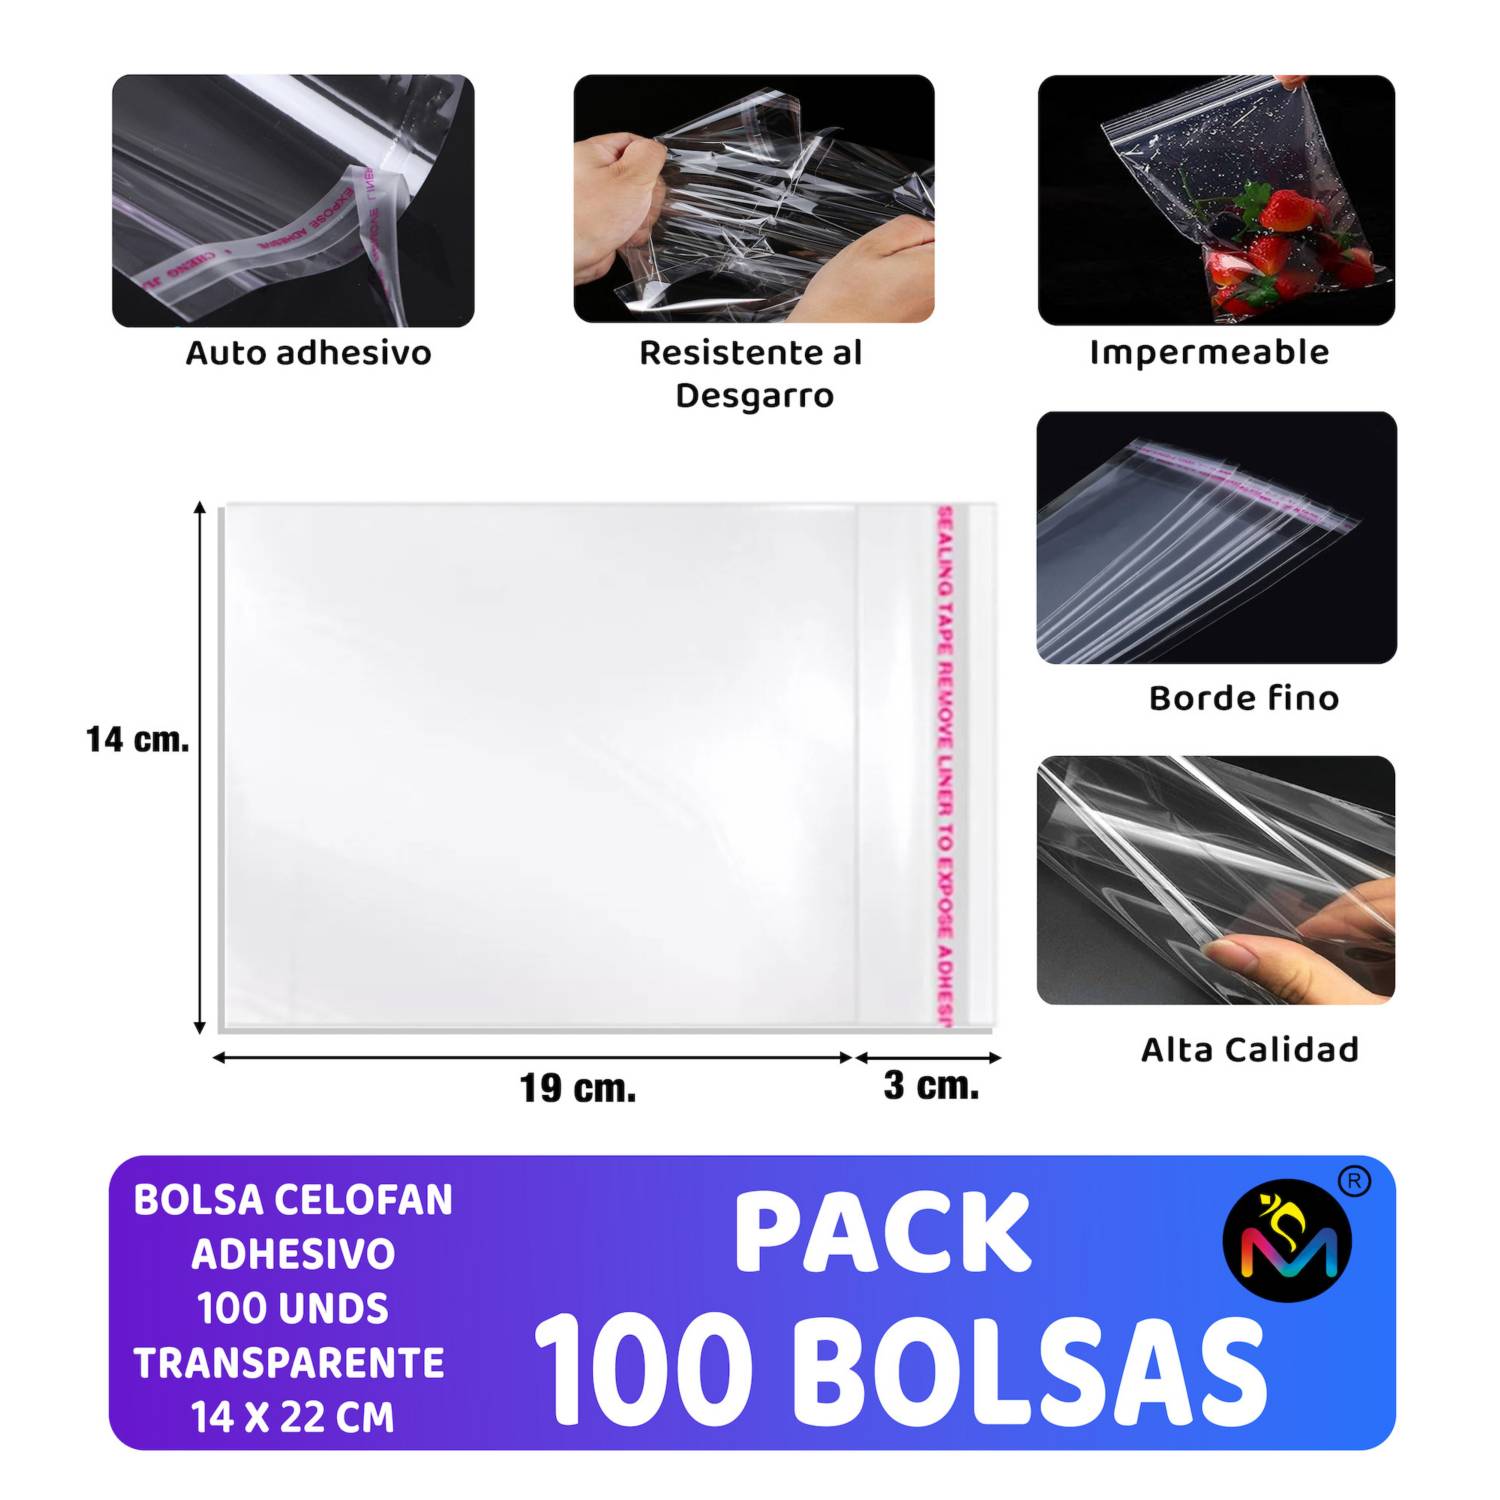 Bolsas de celofán transparente (100 unds.)